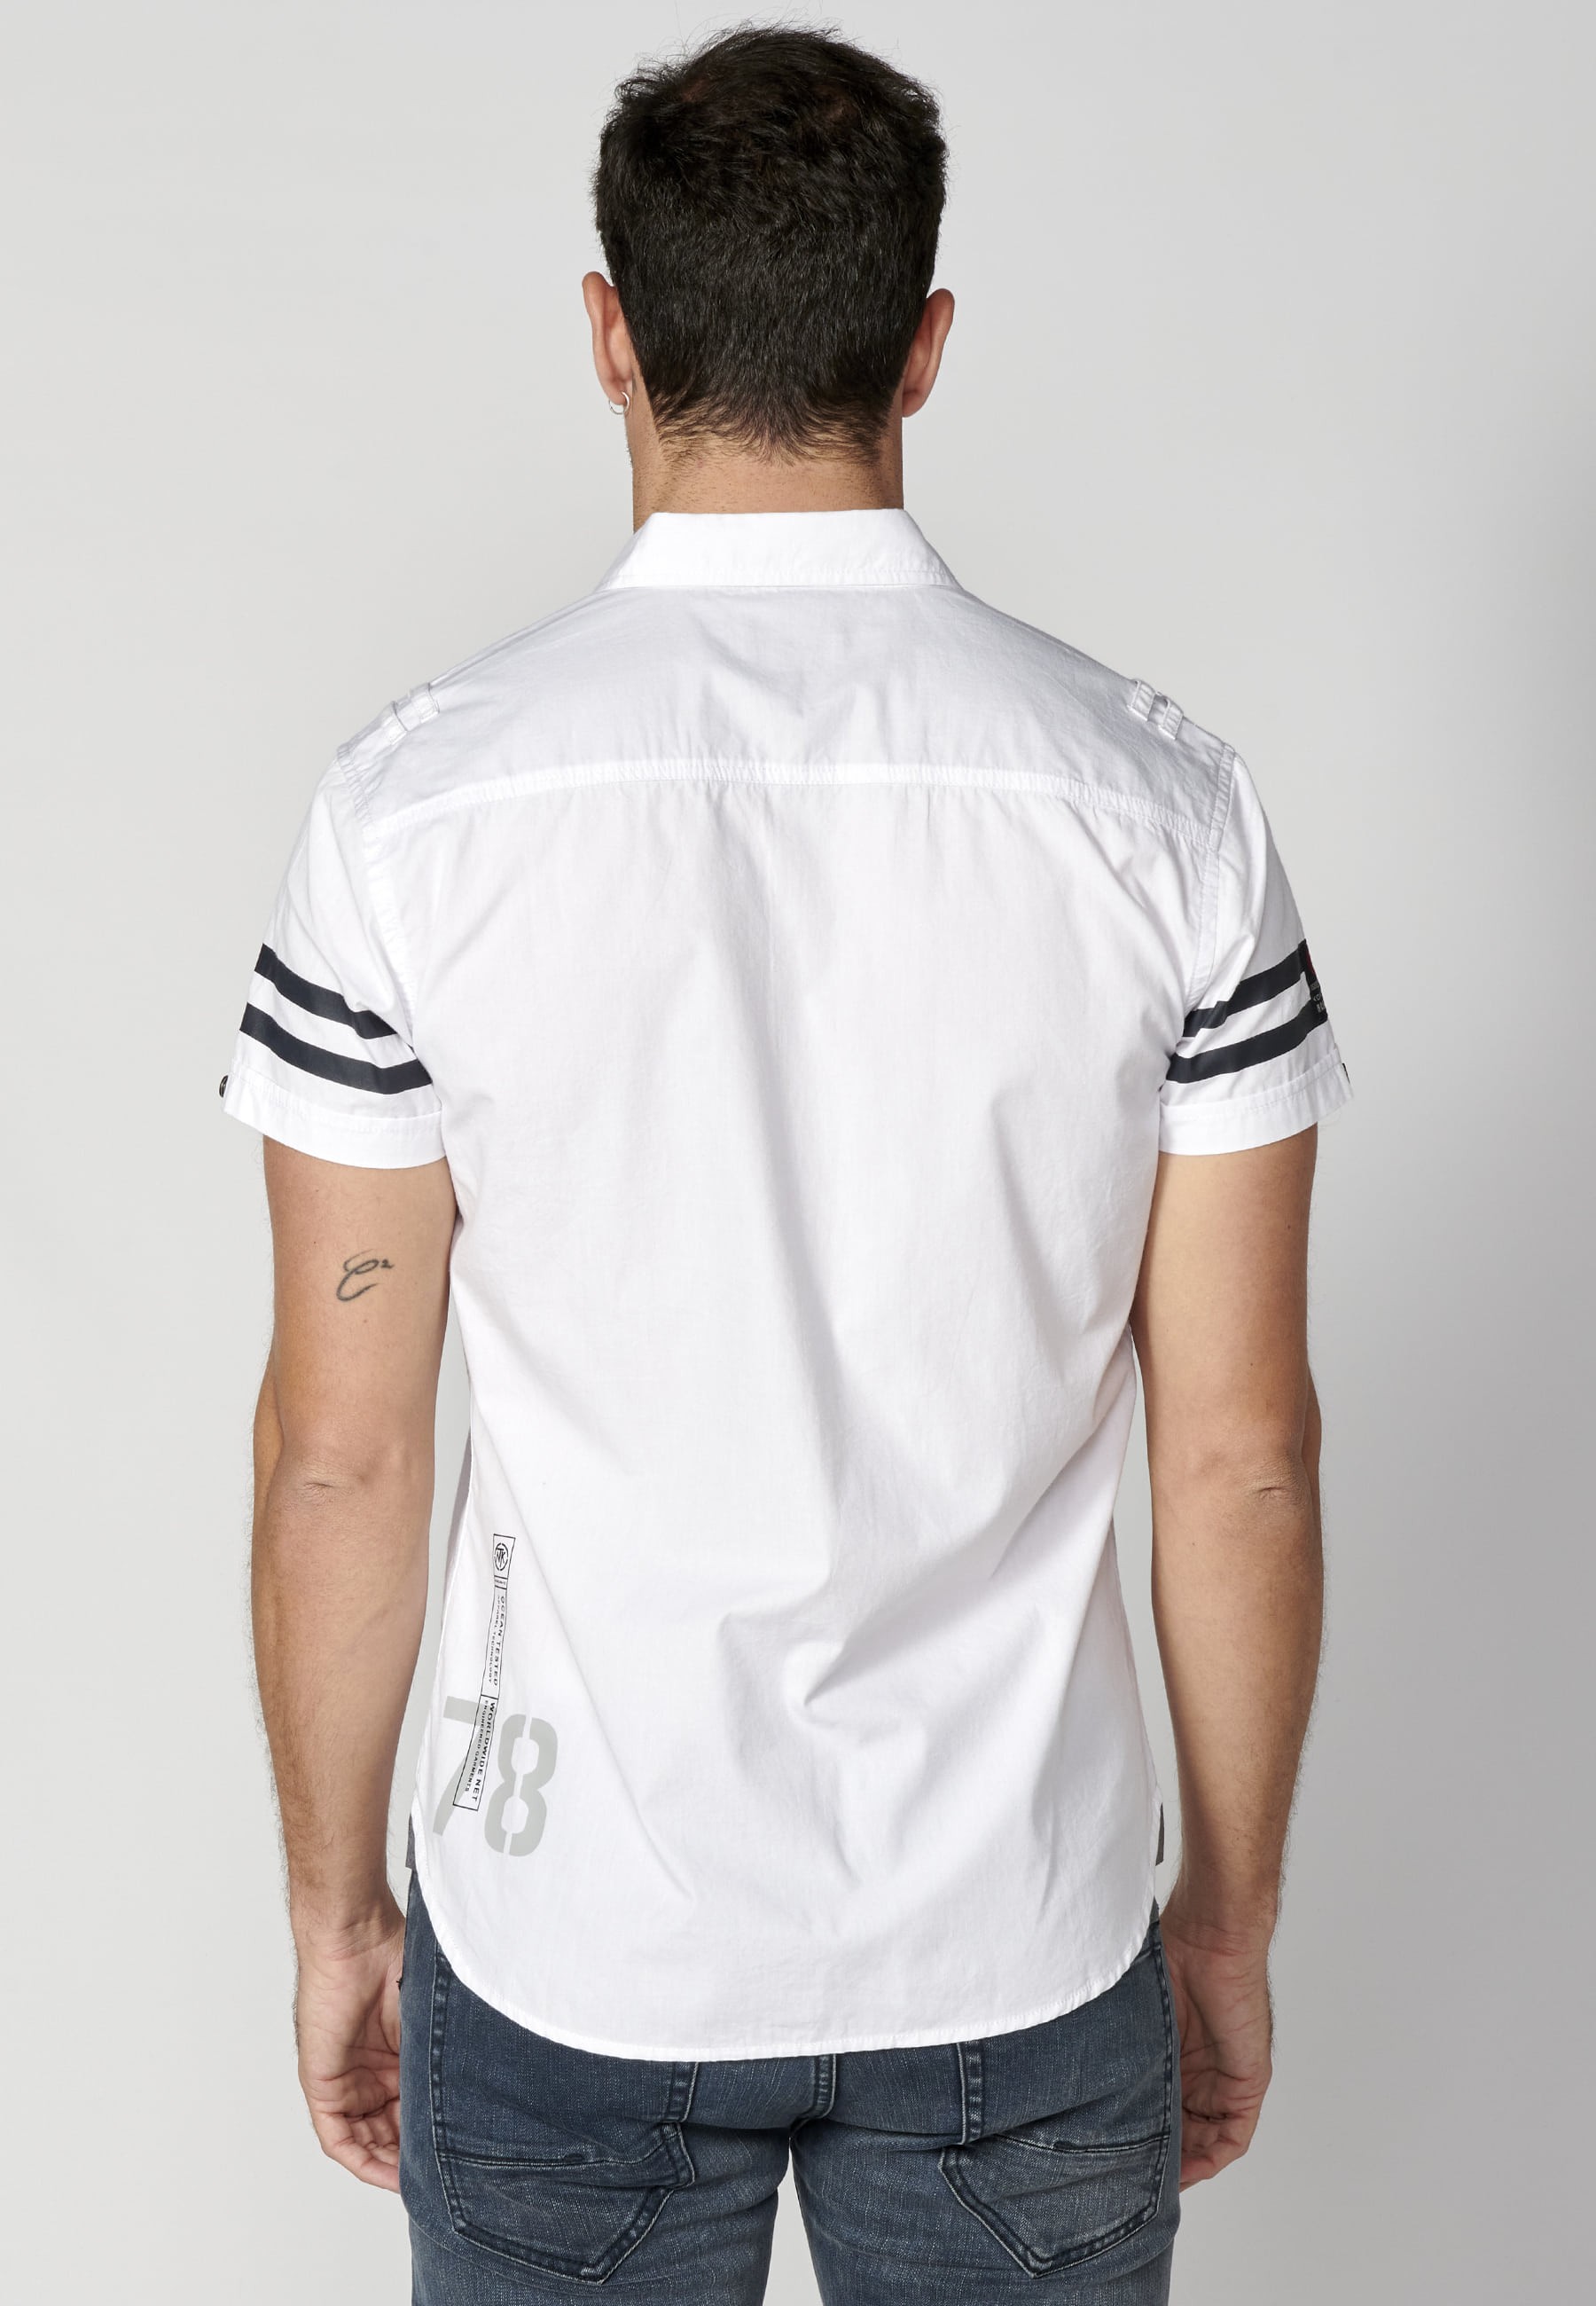 White cotton short-sleeved shirt for Men 8